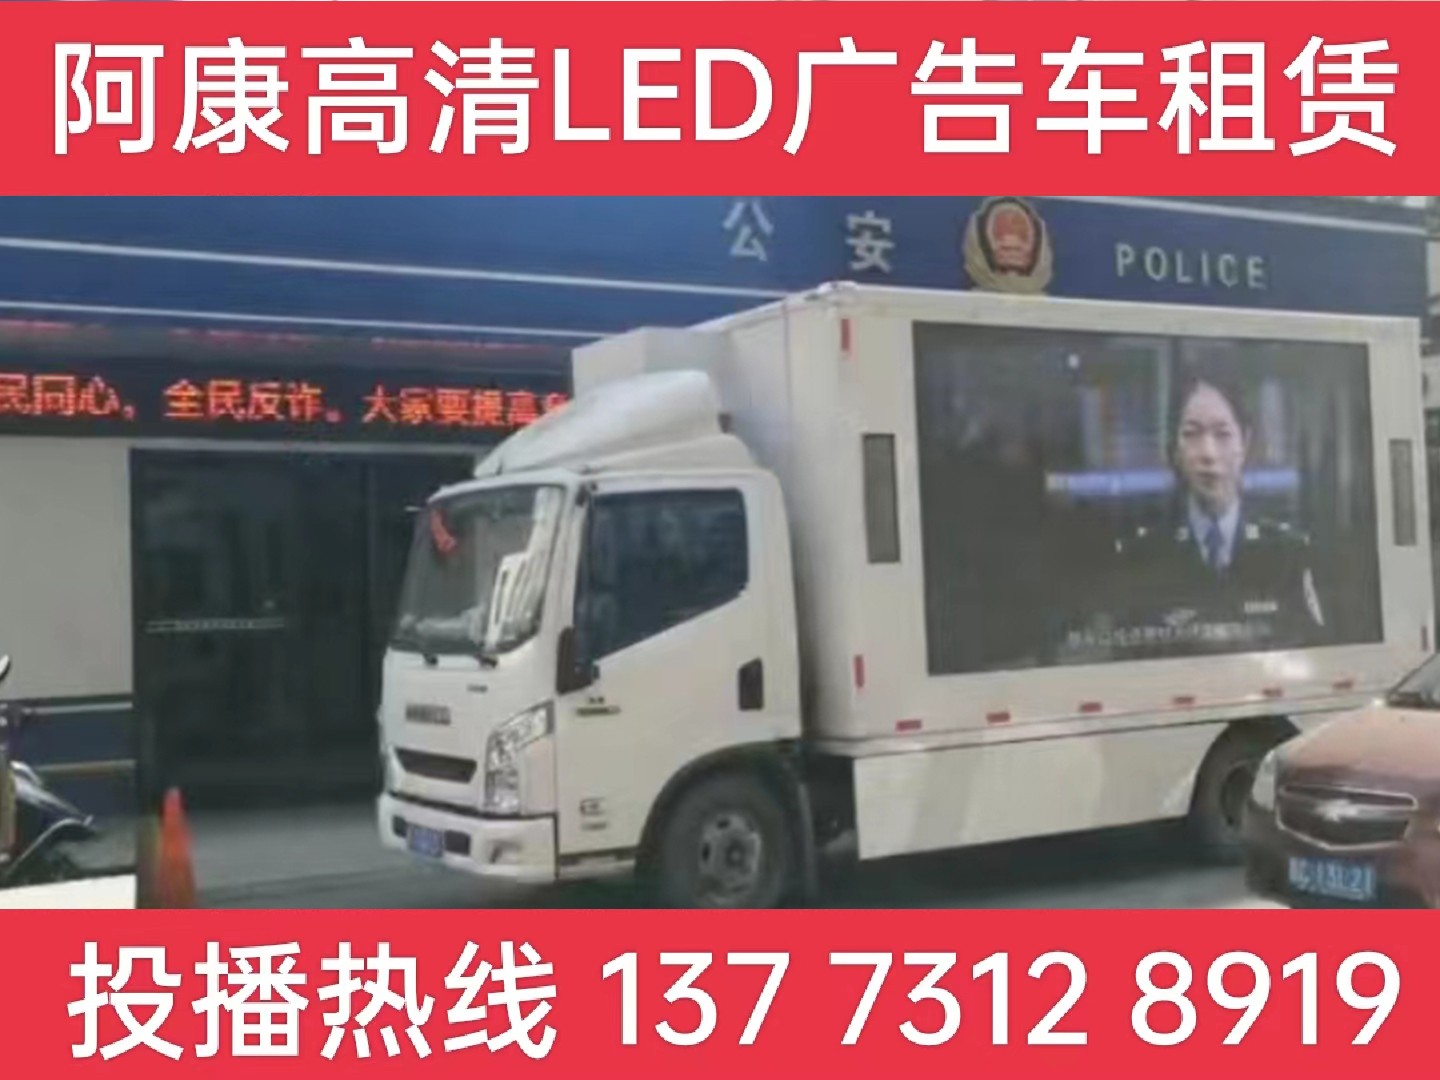 常州LED广告车租赁-反诈宣传